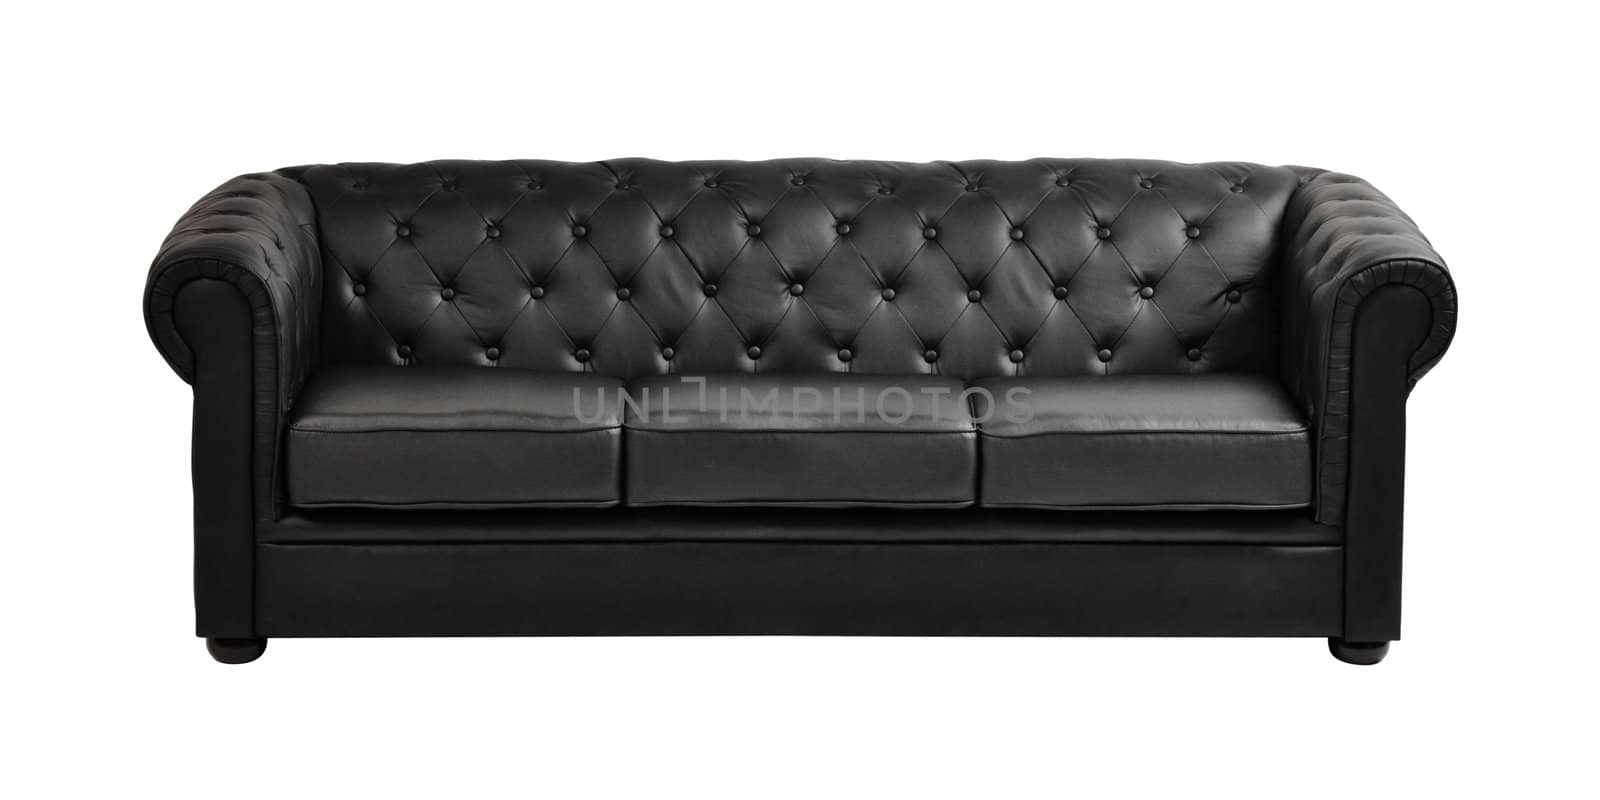 Black sofa isolated on white background